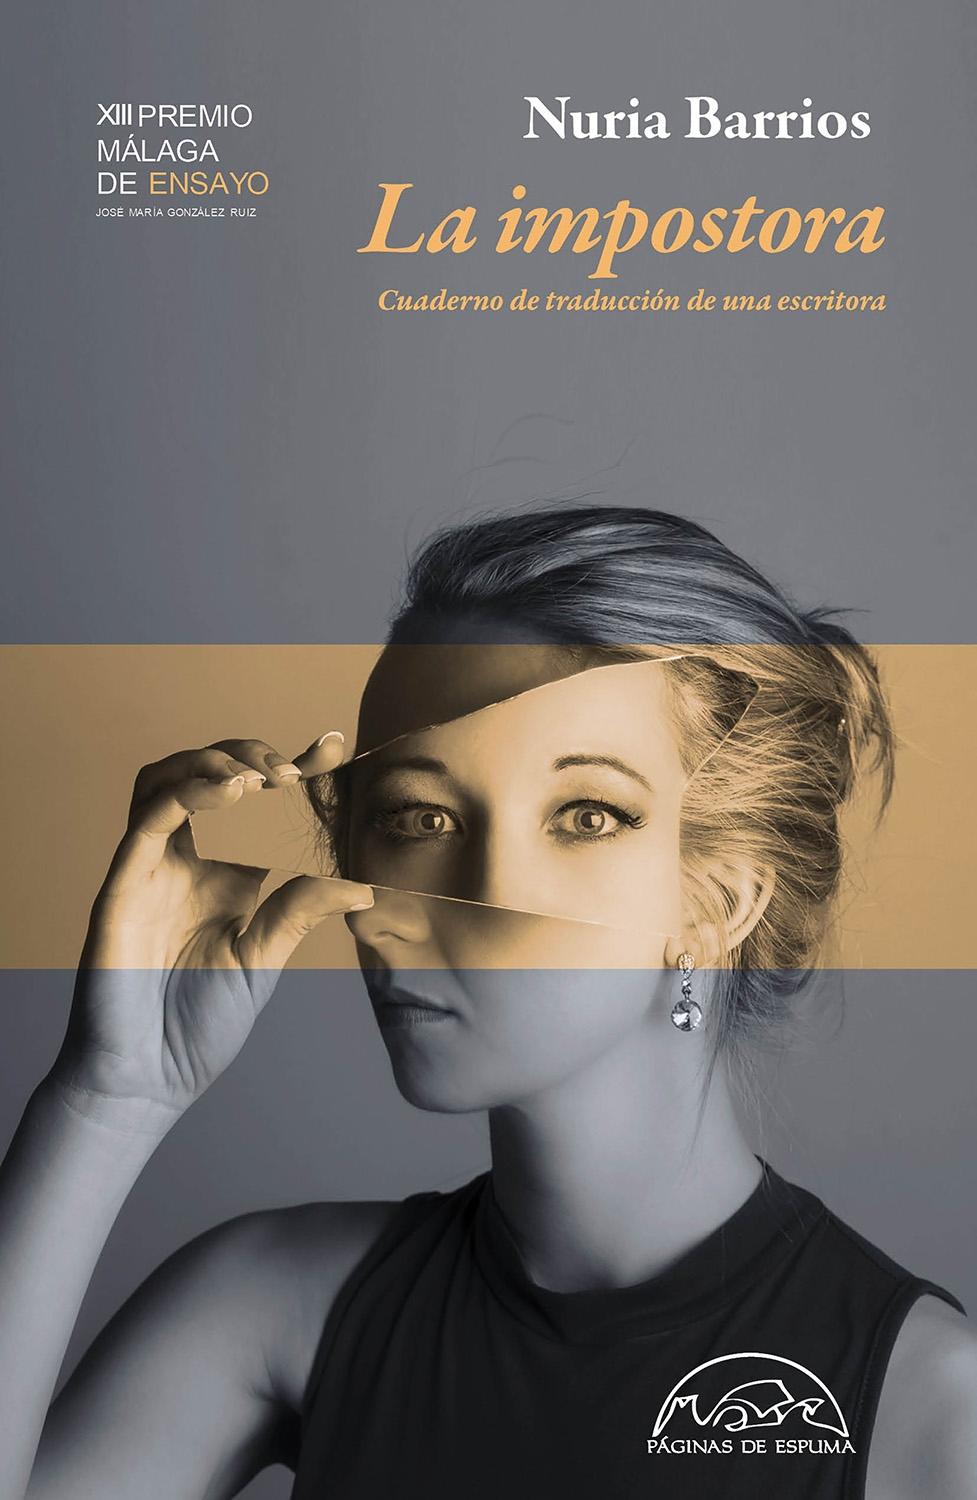 Impostora, La "Cuaderno de traducción de una escritora. XIII Premio Málaga de ensayo"